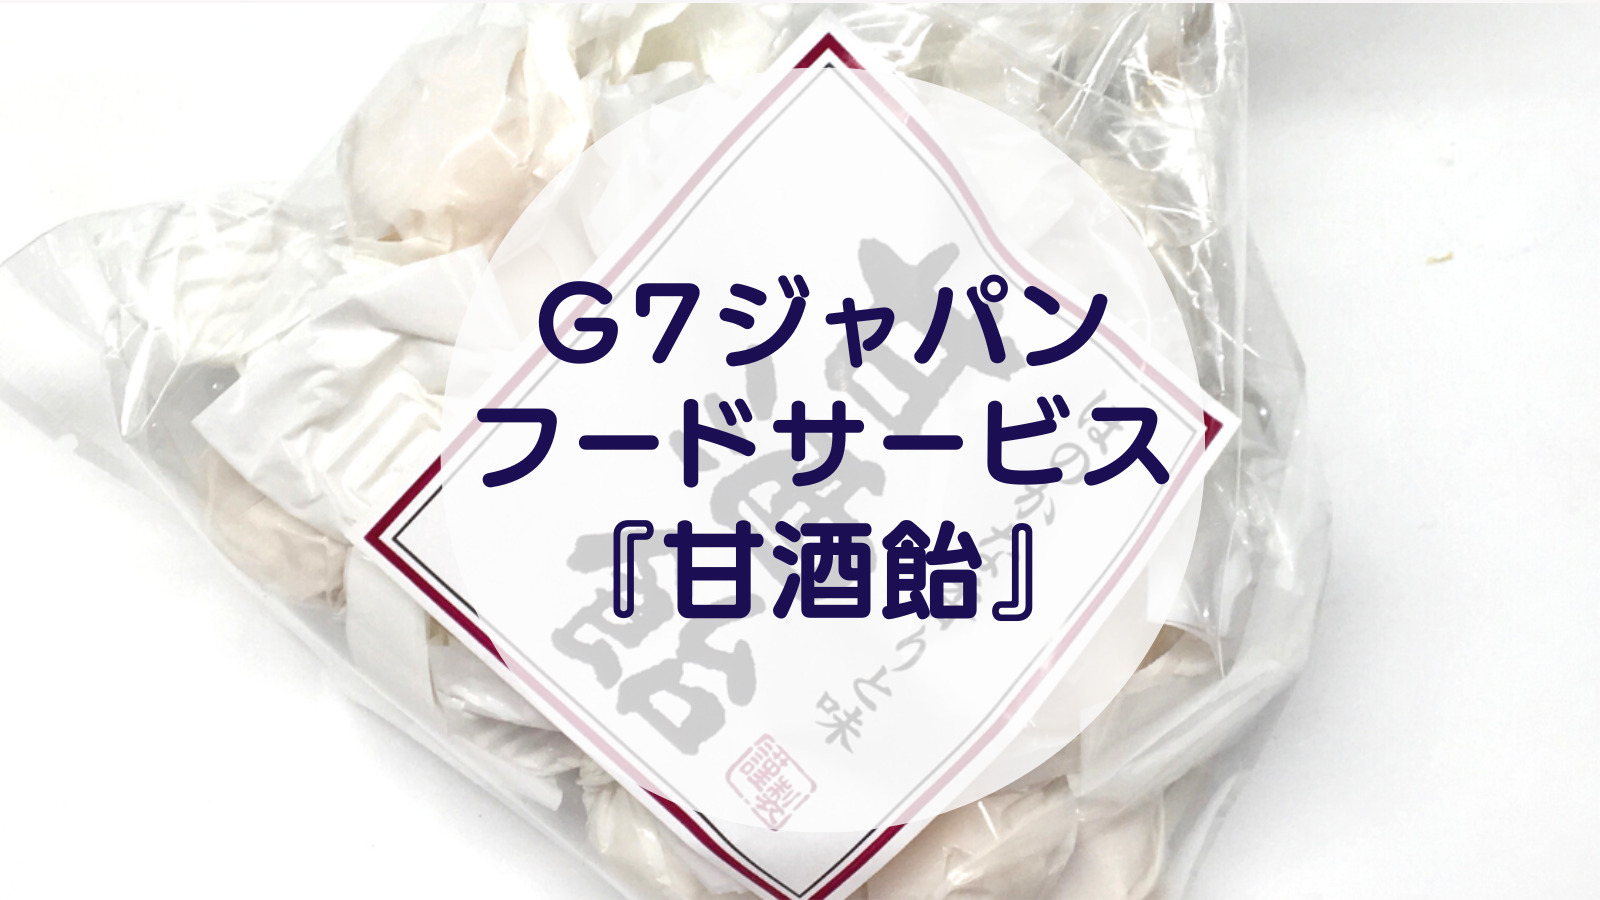 [Amazake sweets]G7japanfudosabisu[Amazake ame](eyecatch)